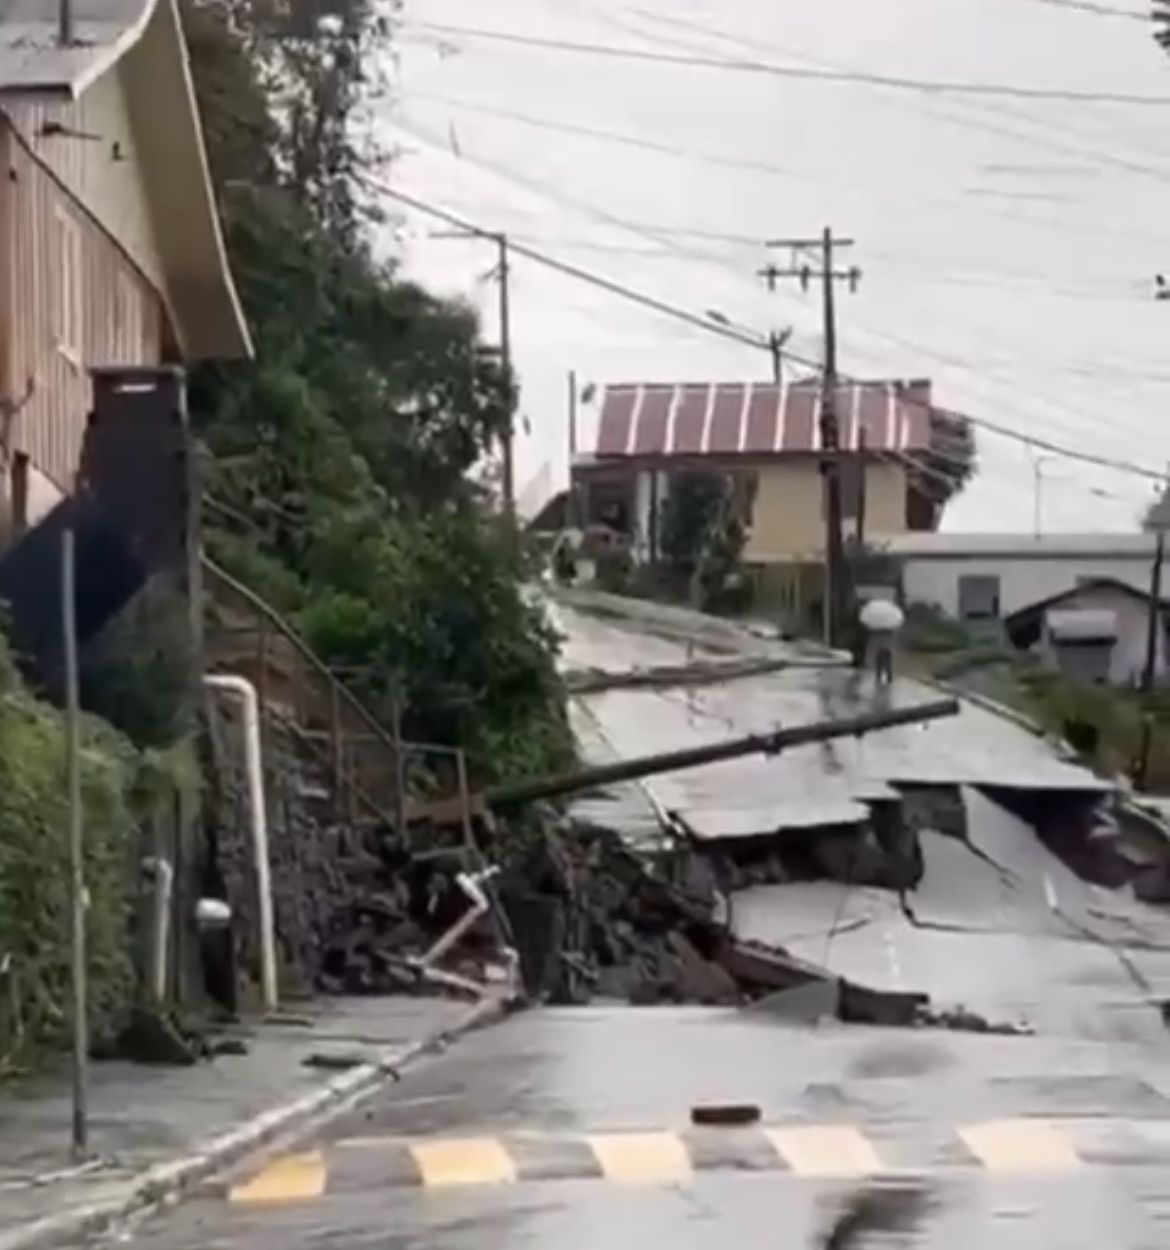 Rua em Gramado, no RSl, desmorona após fortes chuvas; VÍDEO